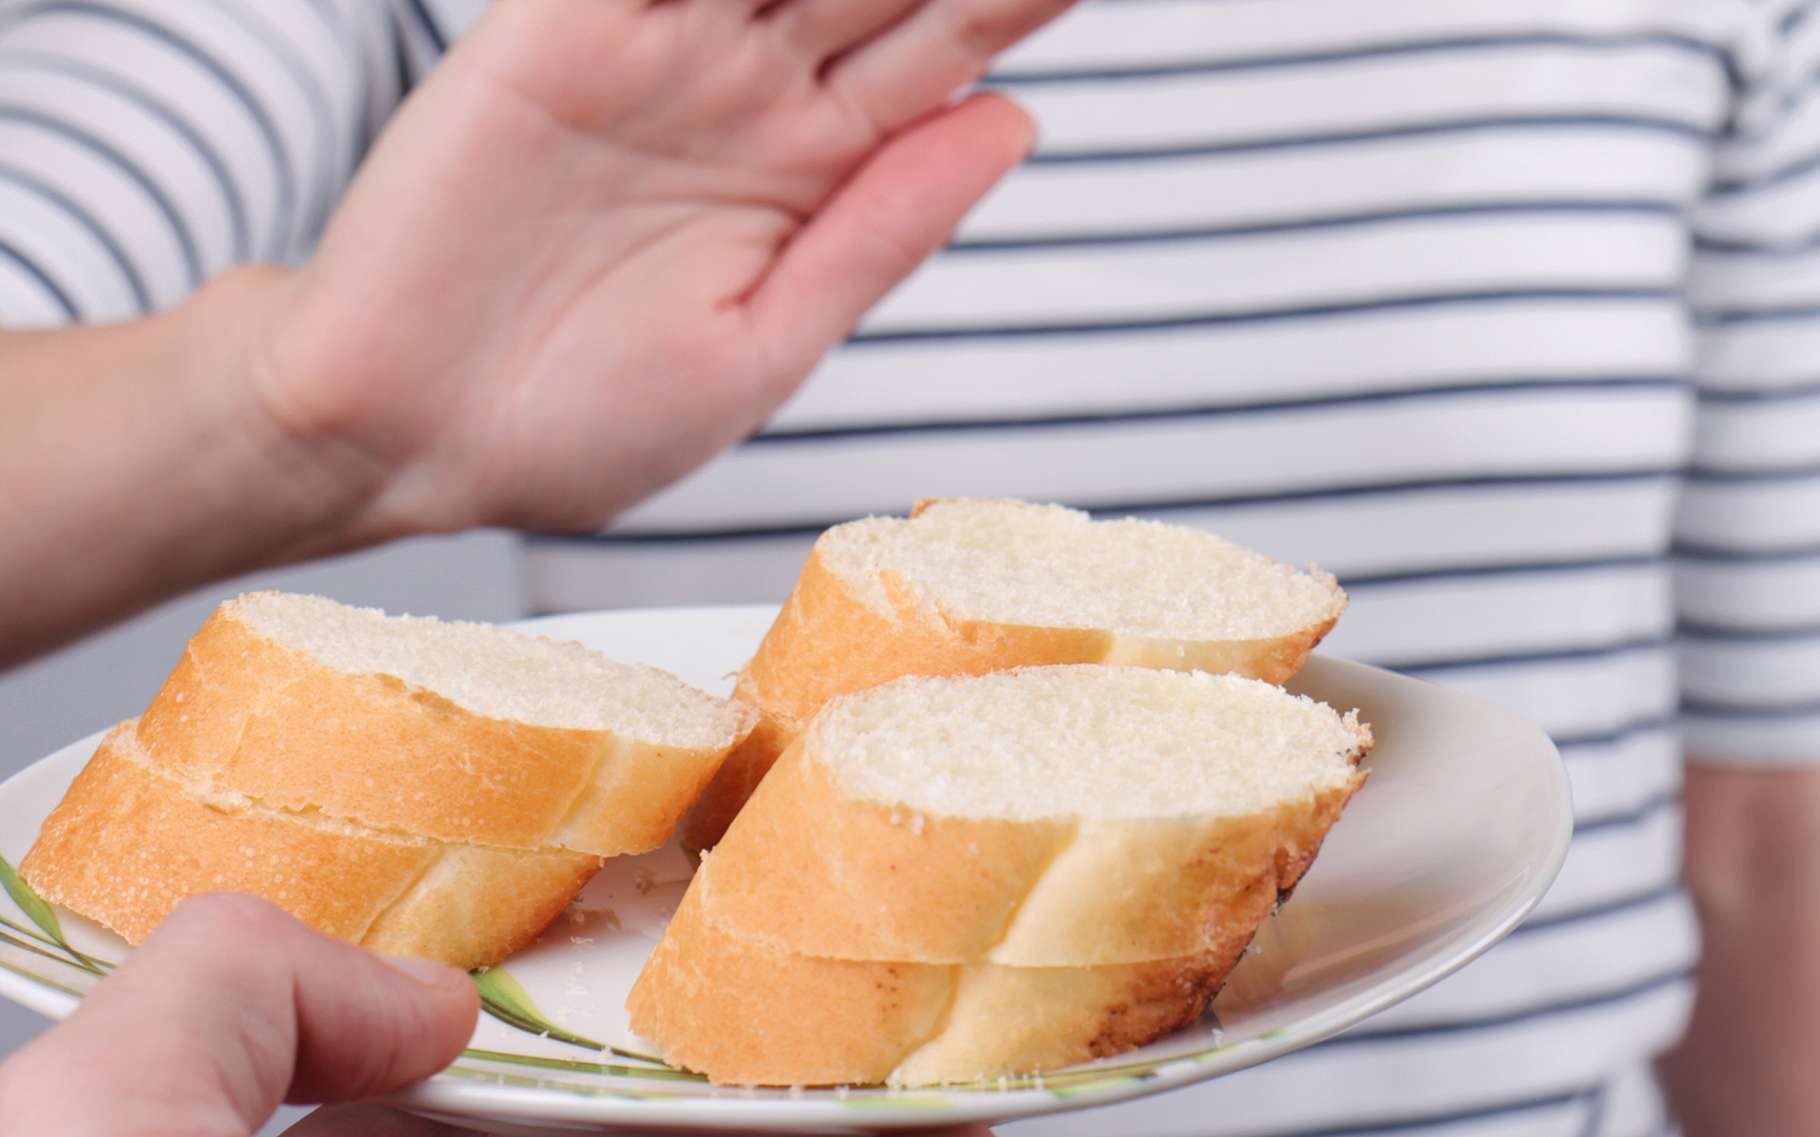 L'intolérance au gluten peut être palliée par un régime strict. © Albina Glisic, Shutterstock